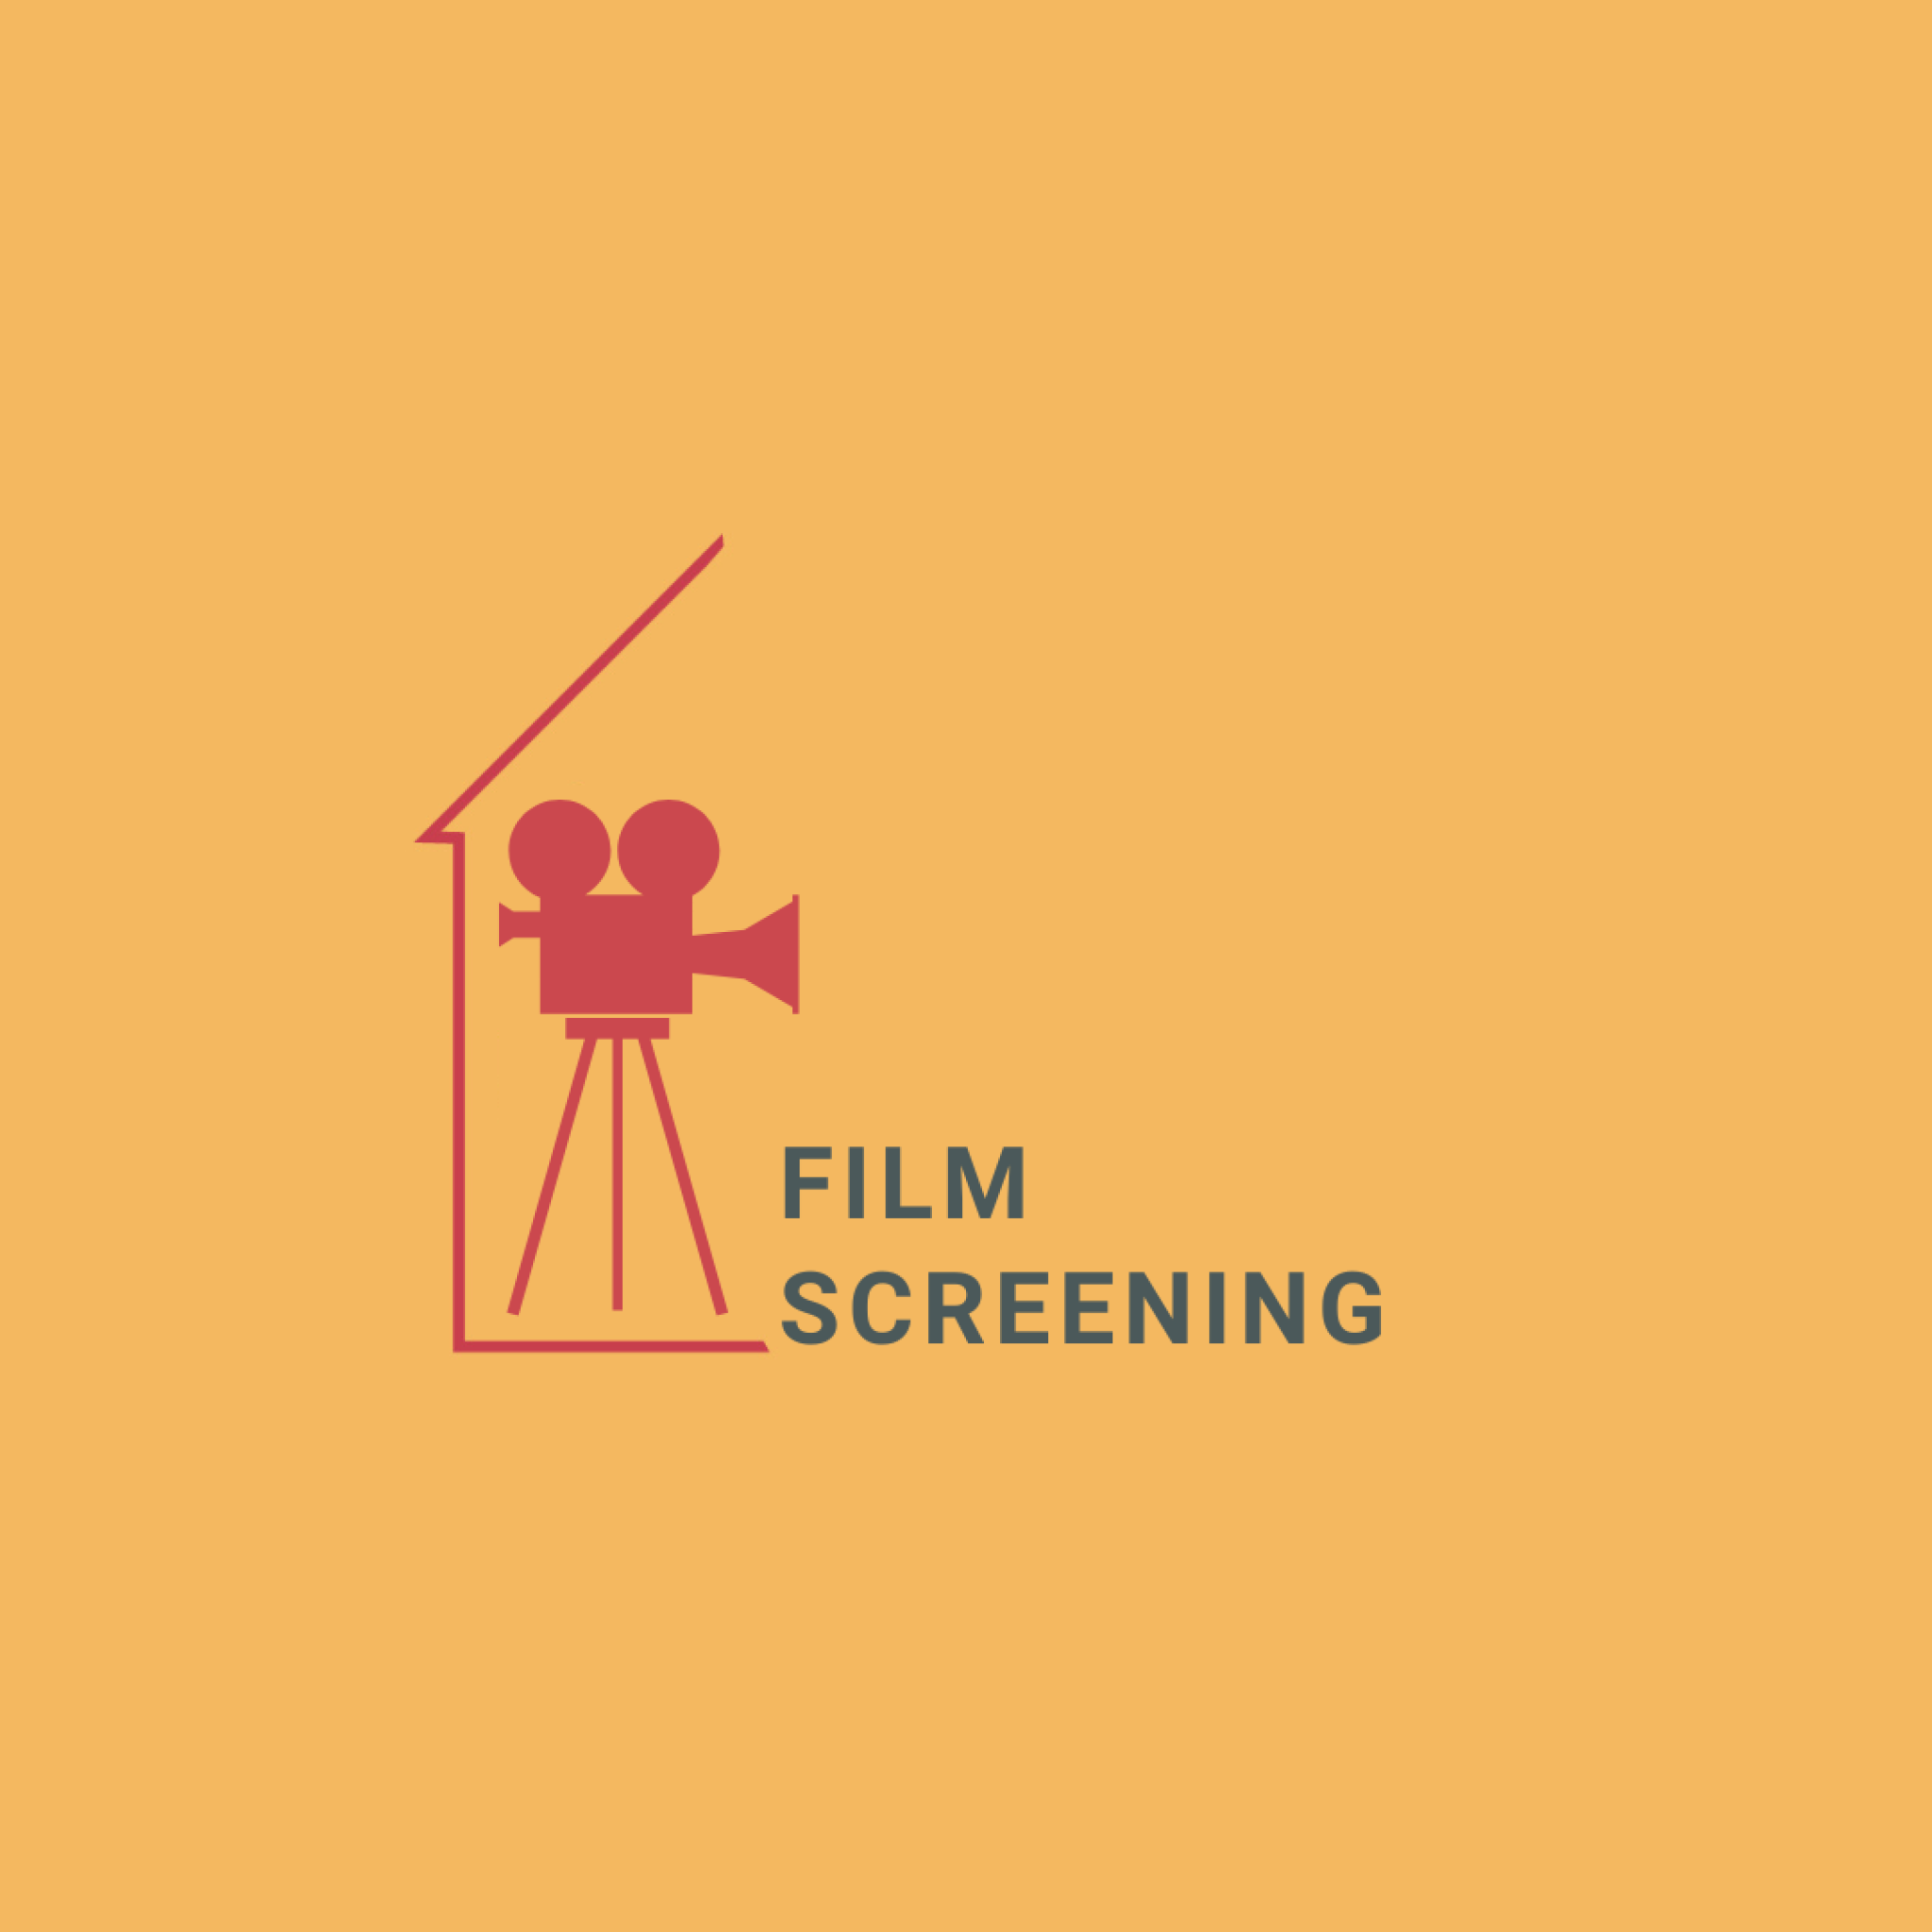 Film Screening Logo